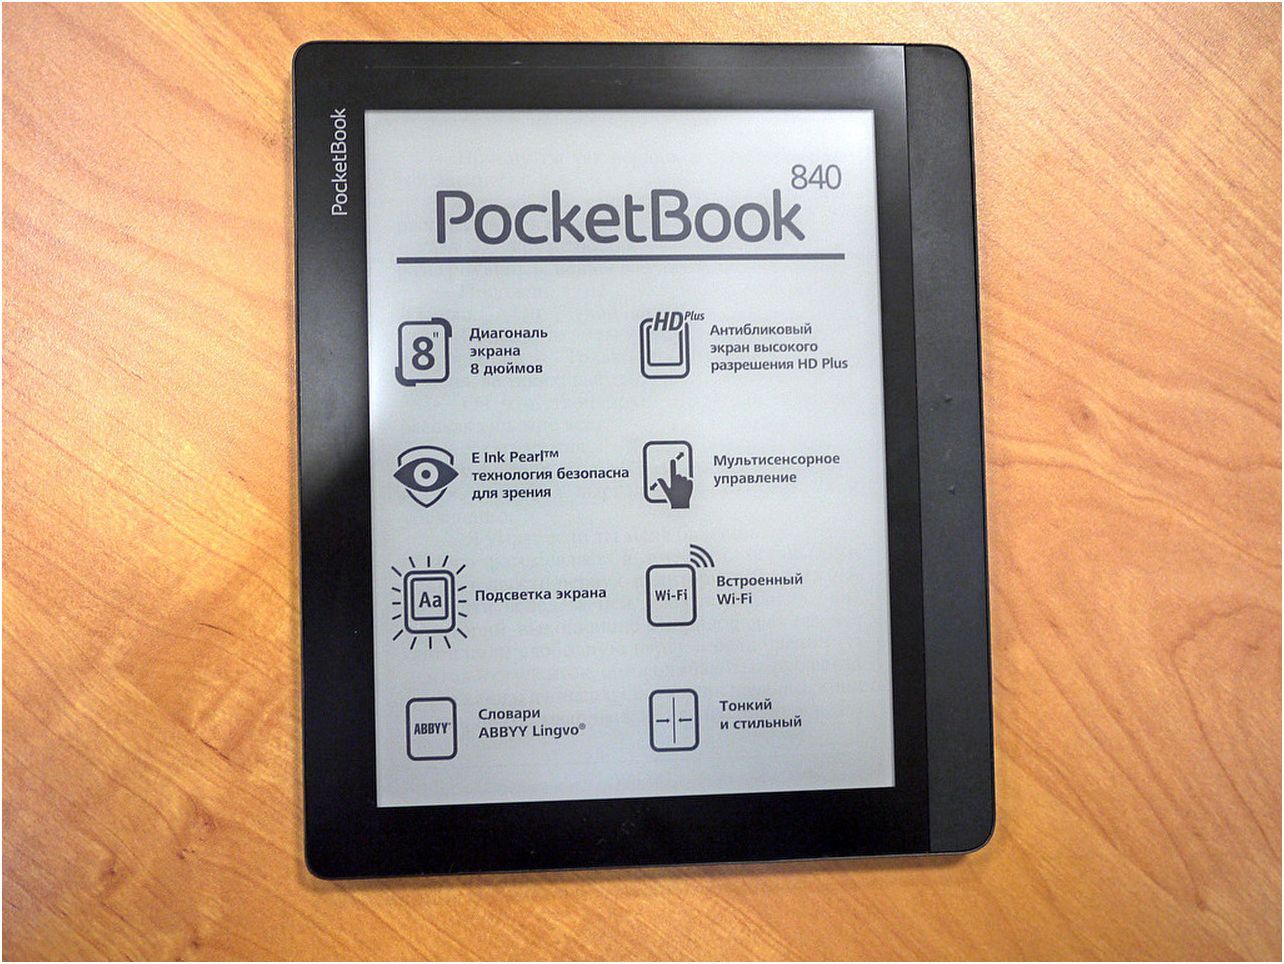 Обзор букридера PocketBook 840: пионер высокого разрешения